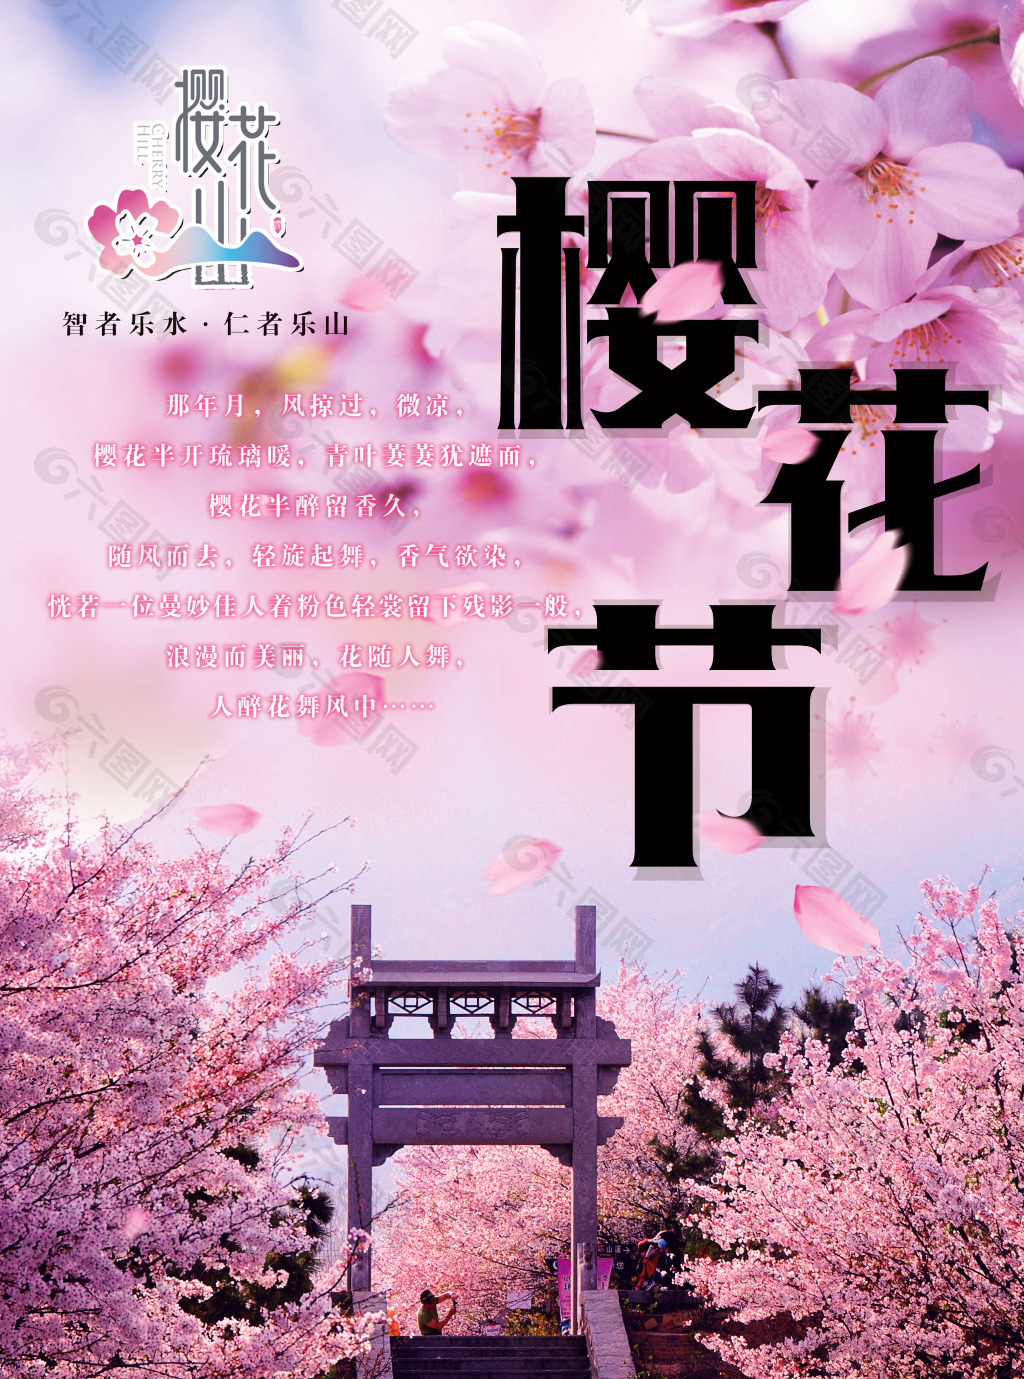 樱花行动海报图片